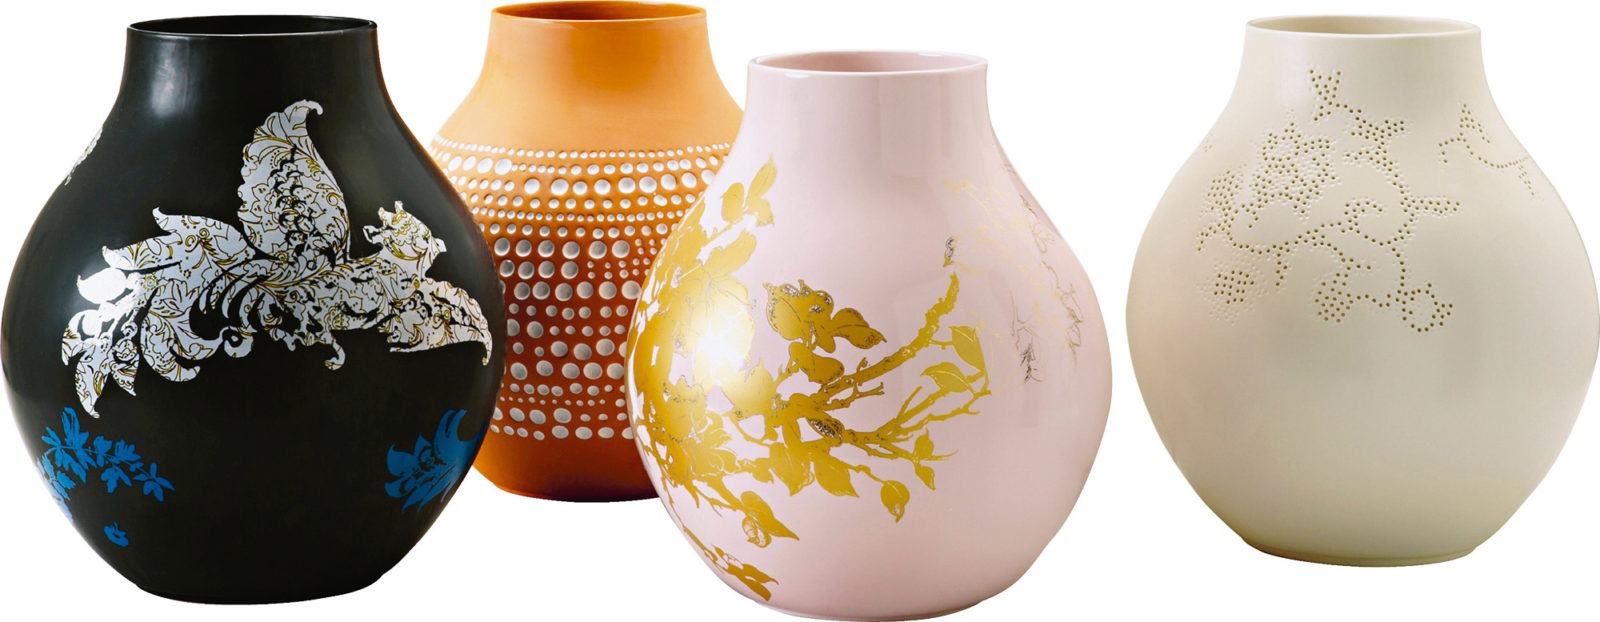 Fyra vaser i olika mönster och färger, bland annat rosa med gulddekorationer och svart med vitt mönster, IKEA PS JONSBERG.